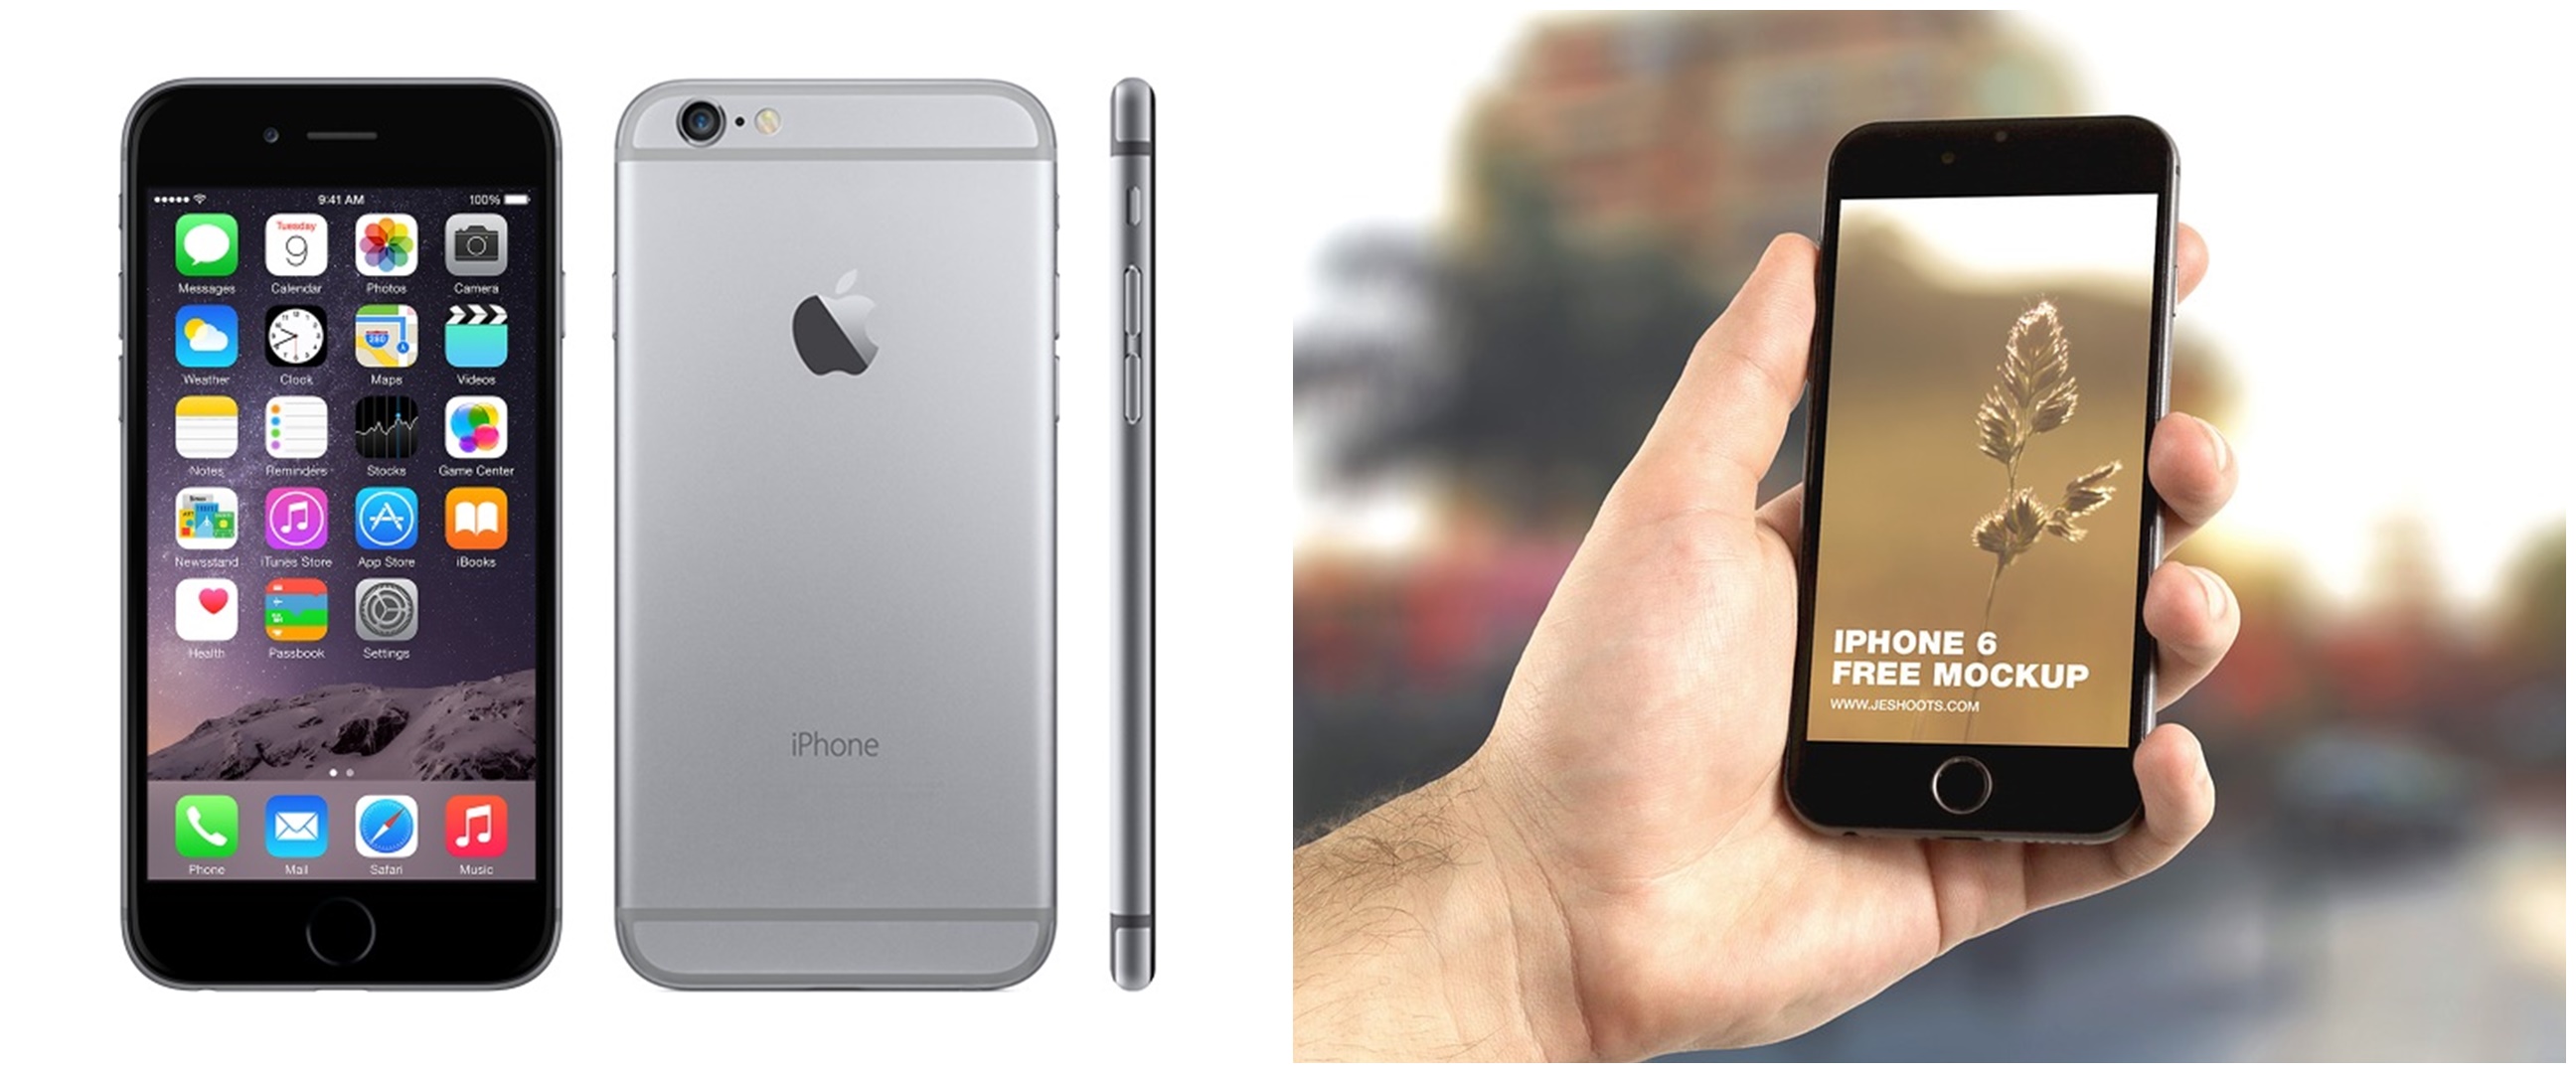 Harga iPhone 6 serta spesifikasi, kelebihan, dan kekurangan